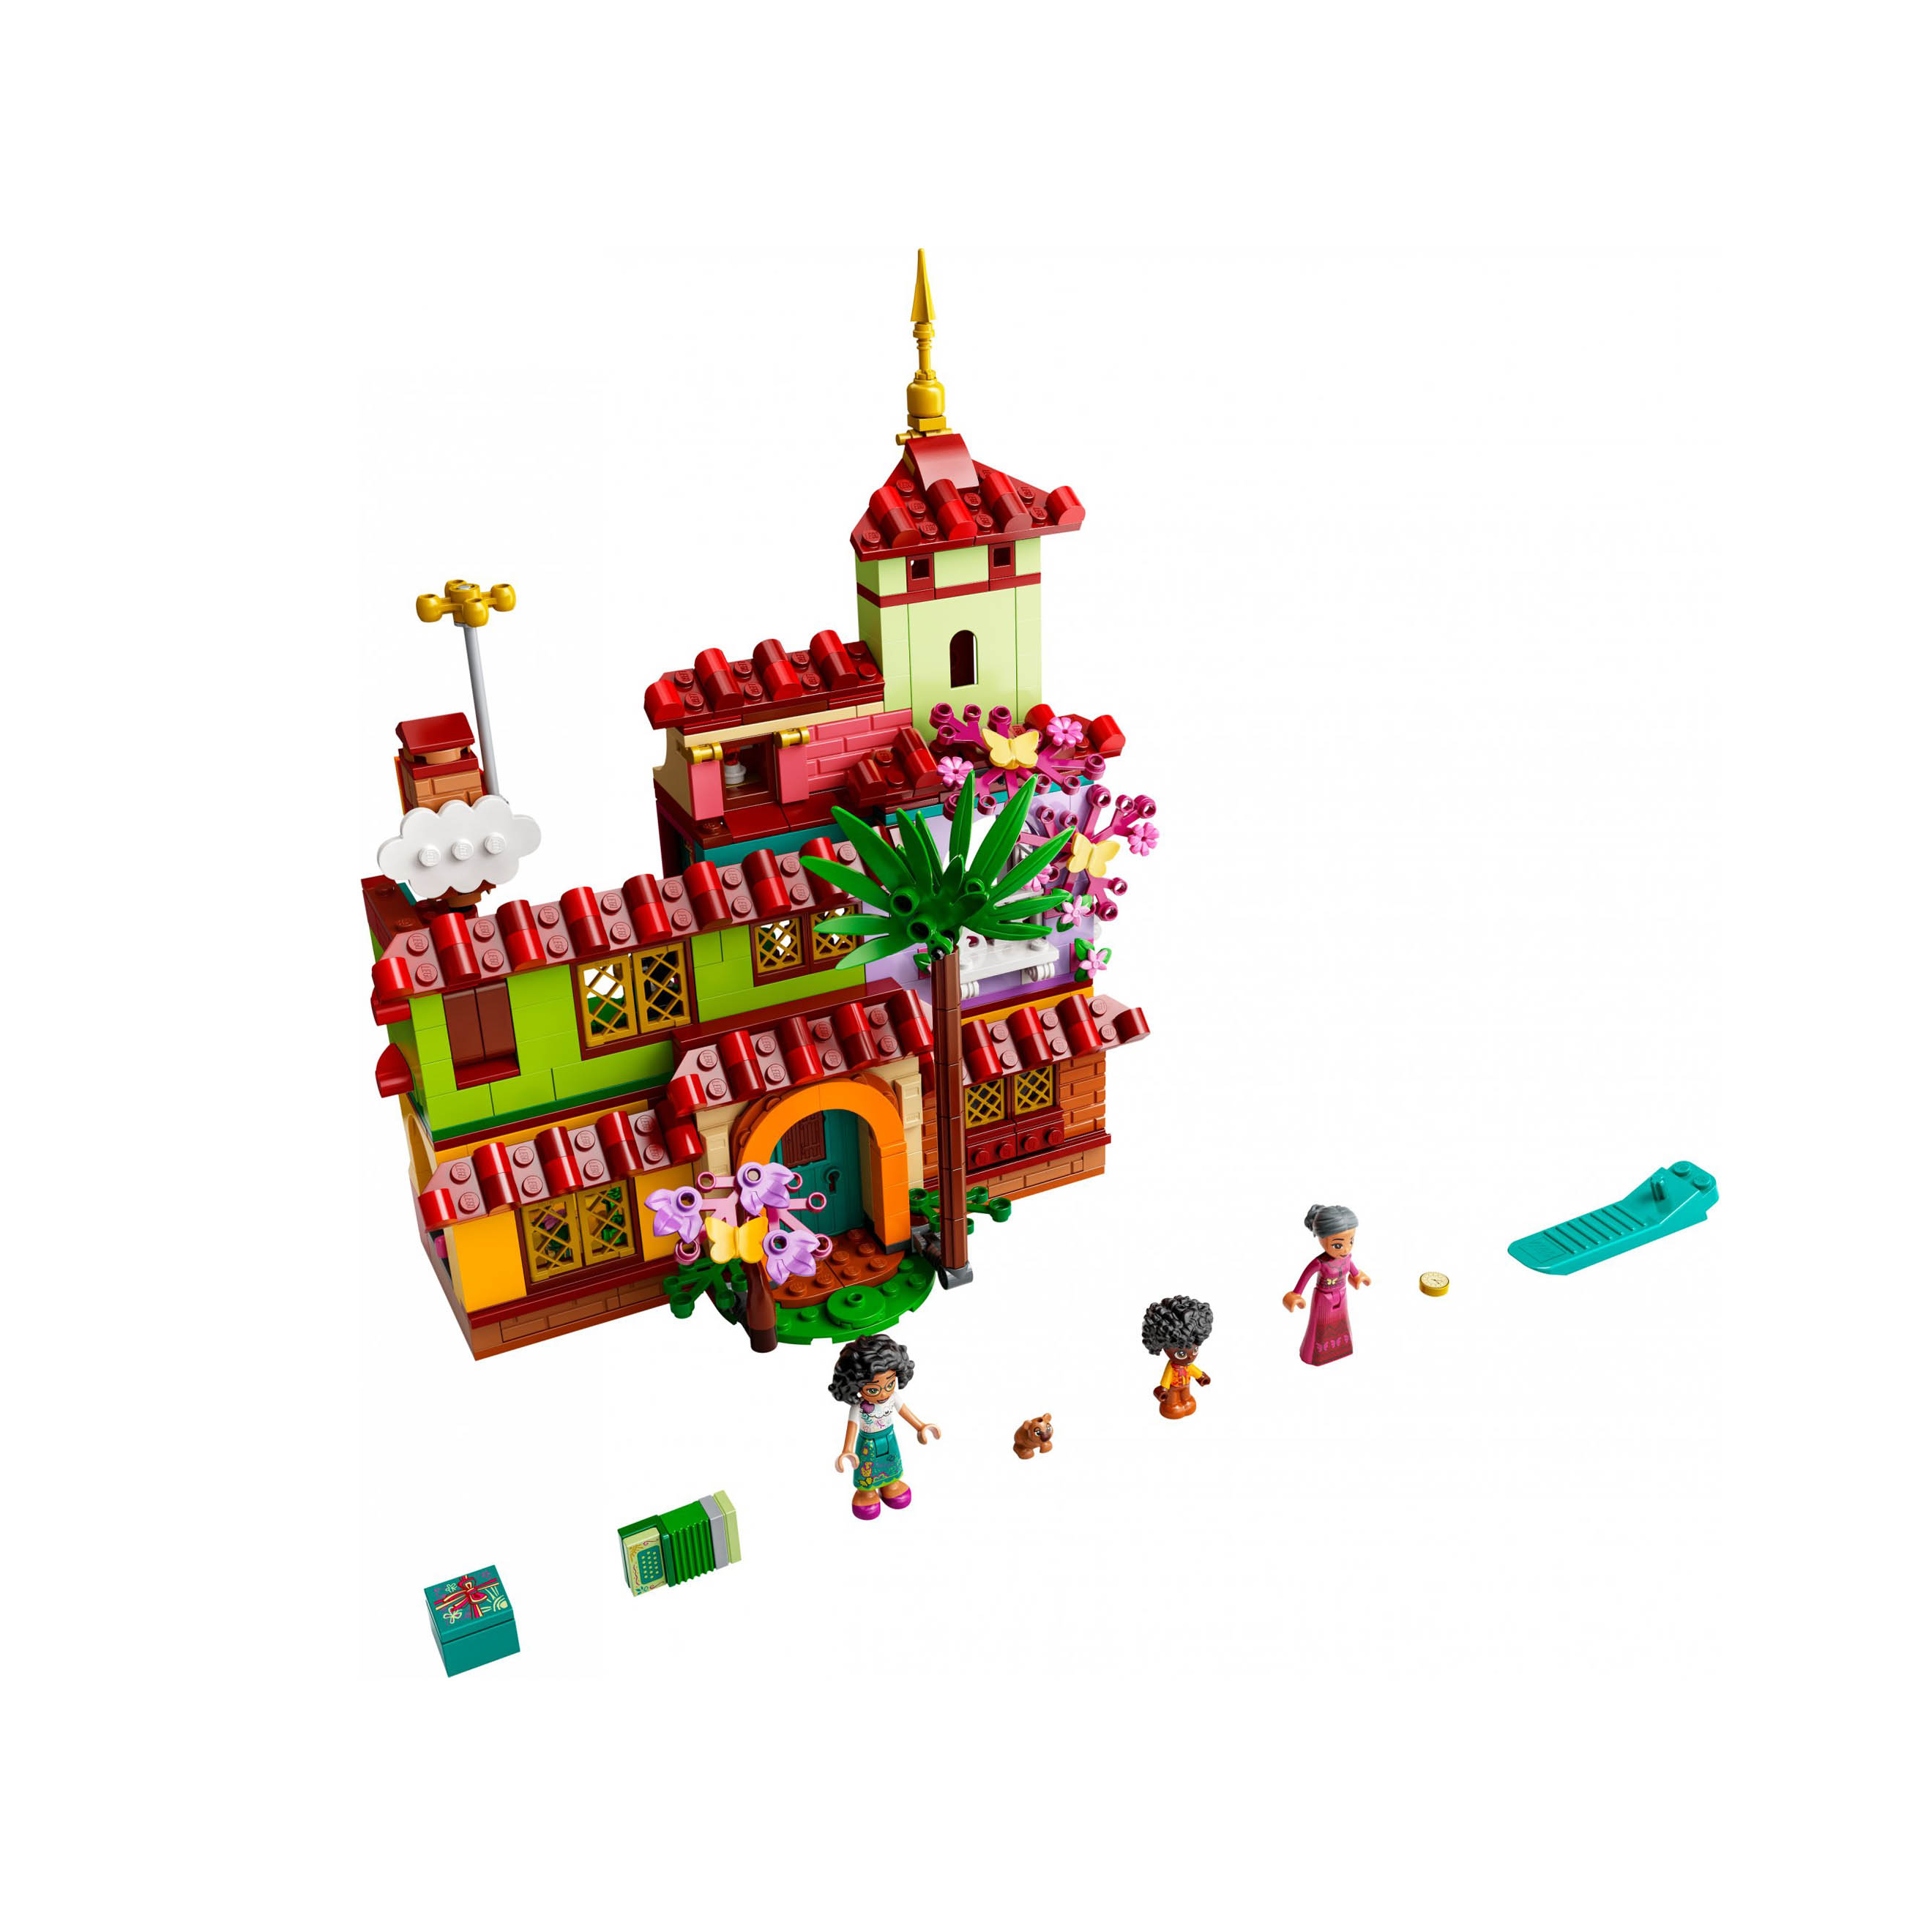 LEGO Disney Princess la Casa dei Madrigal, Giocattolo con Mini-Bamboline, Idea R 43202, , large